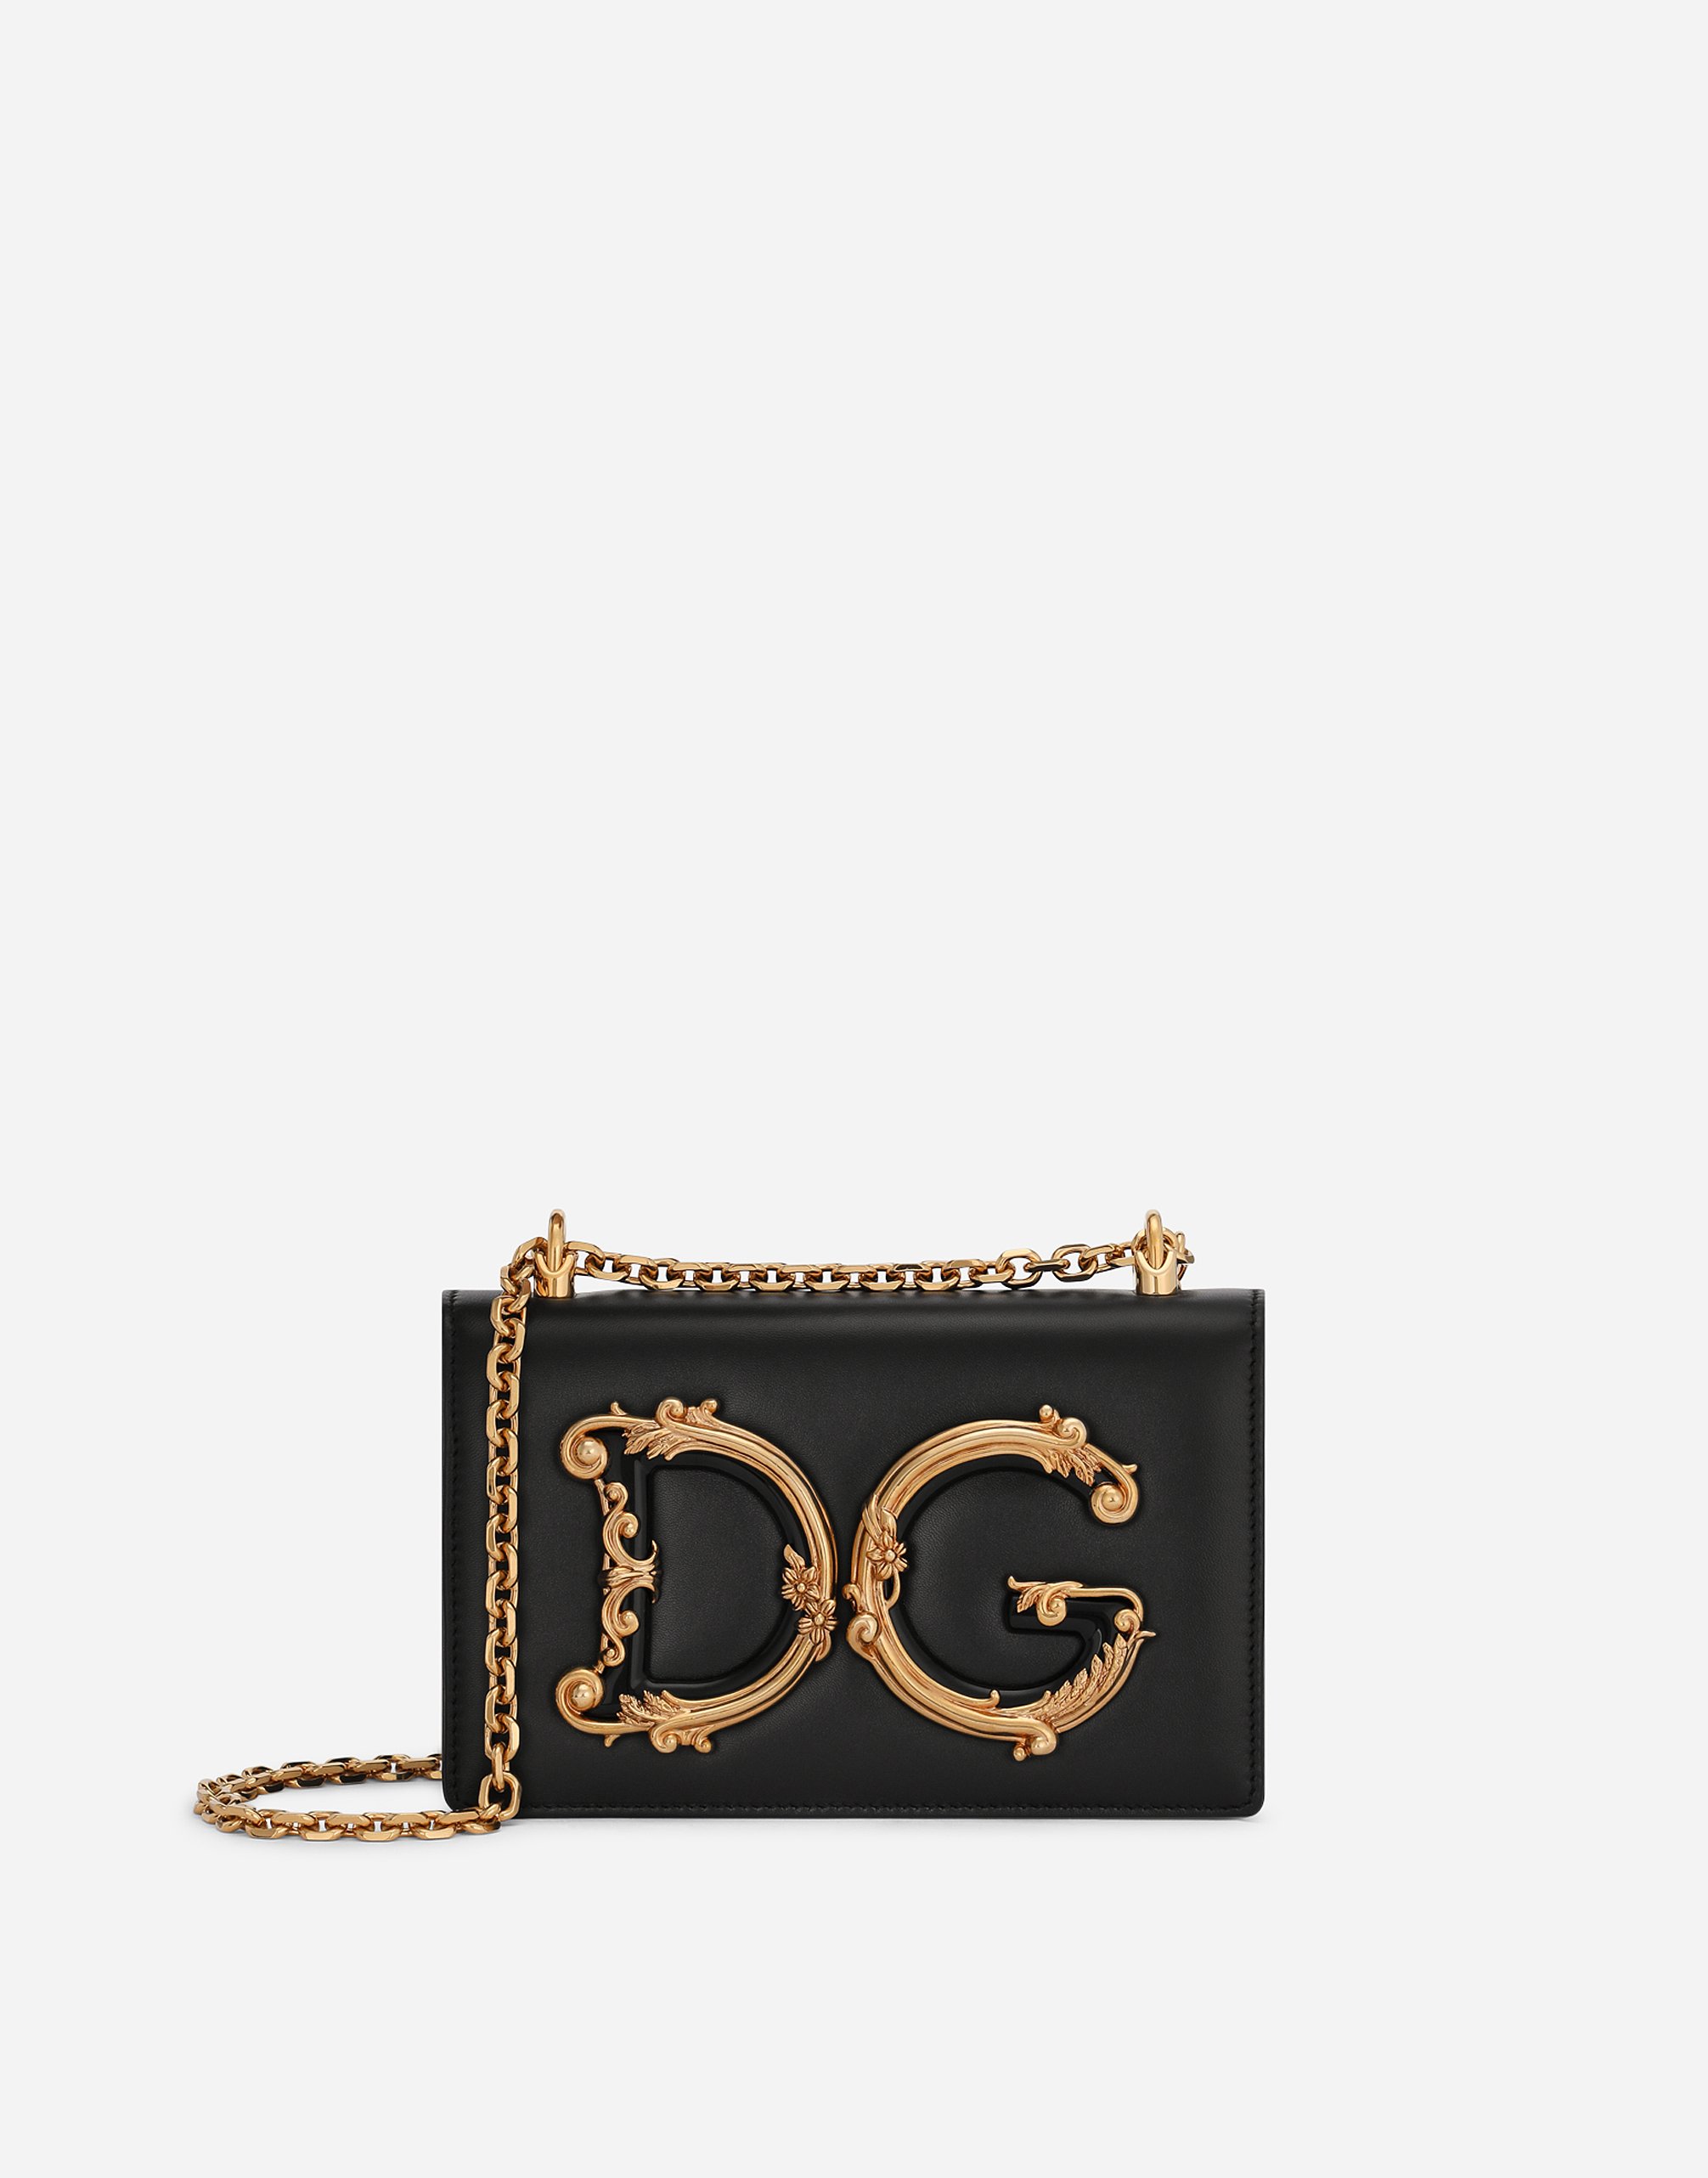 Nappa leather DG Girls bag in Black